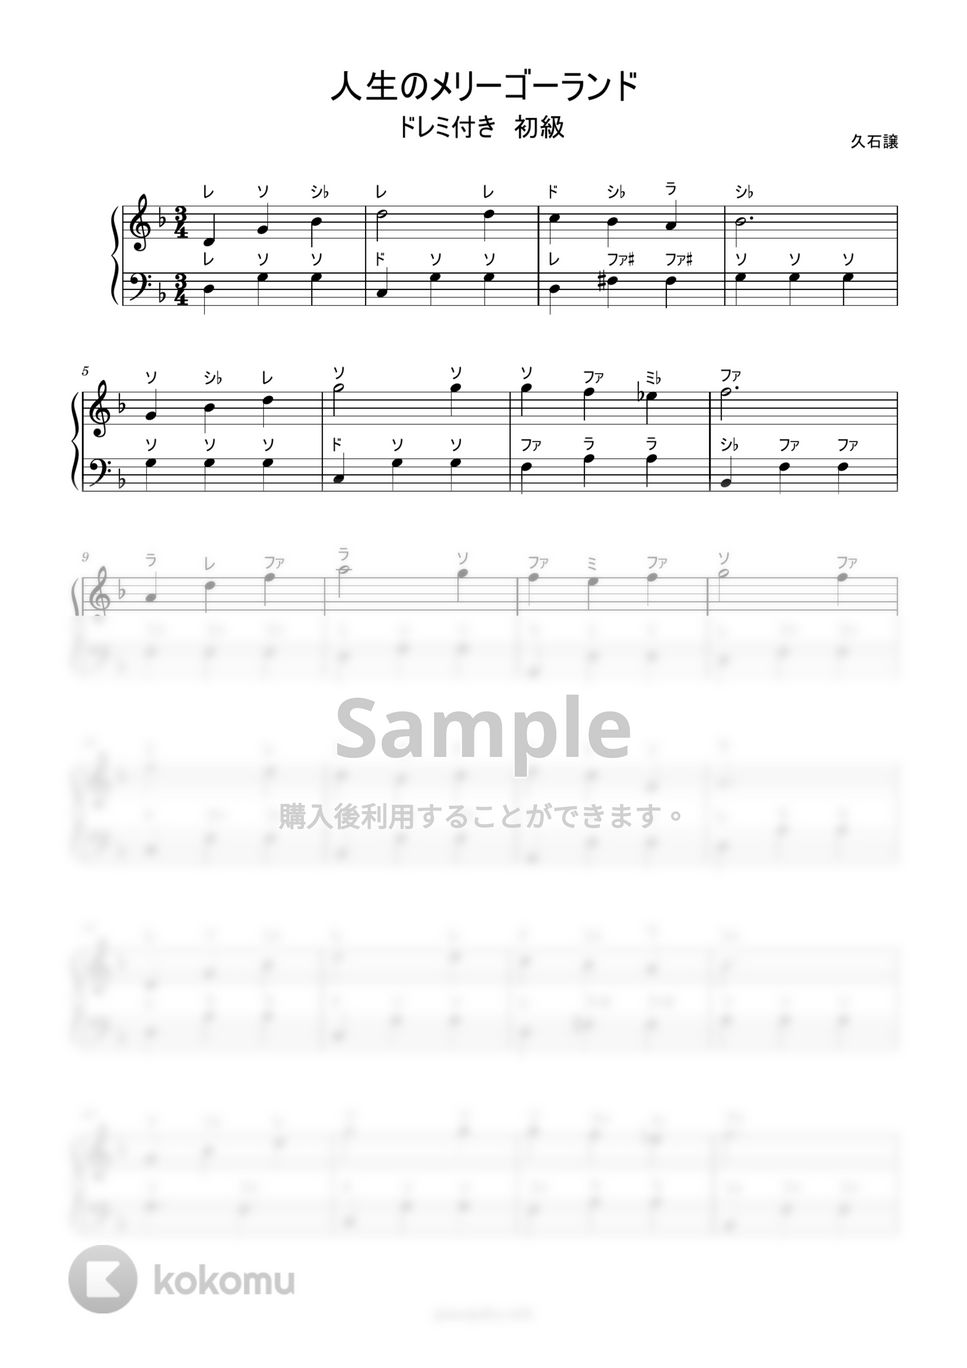 久石譲 - 人生のメリーゴーランド (ドレミ付き簡単楽譜) by ピアノ塾